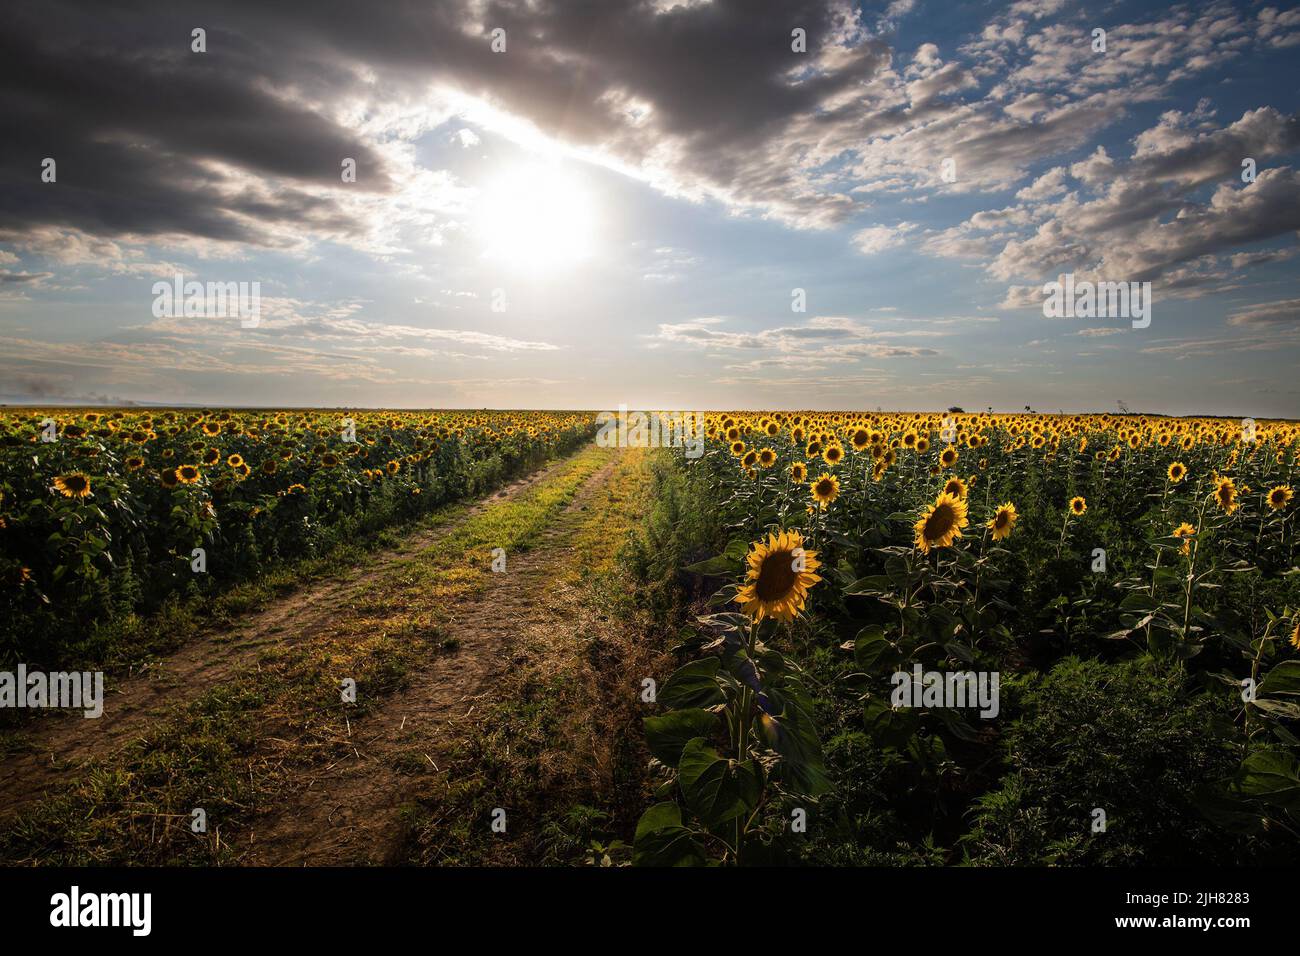 Sunflower field on sunset. Beautiful nature landscape panorama. Stock Photo